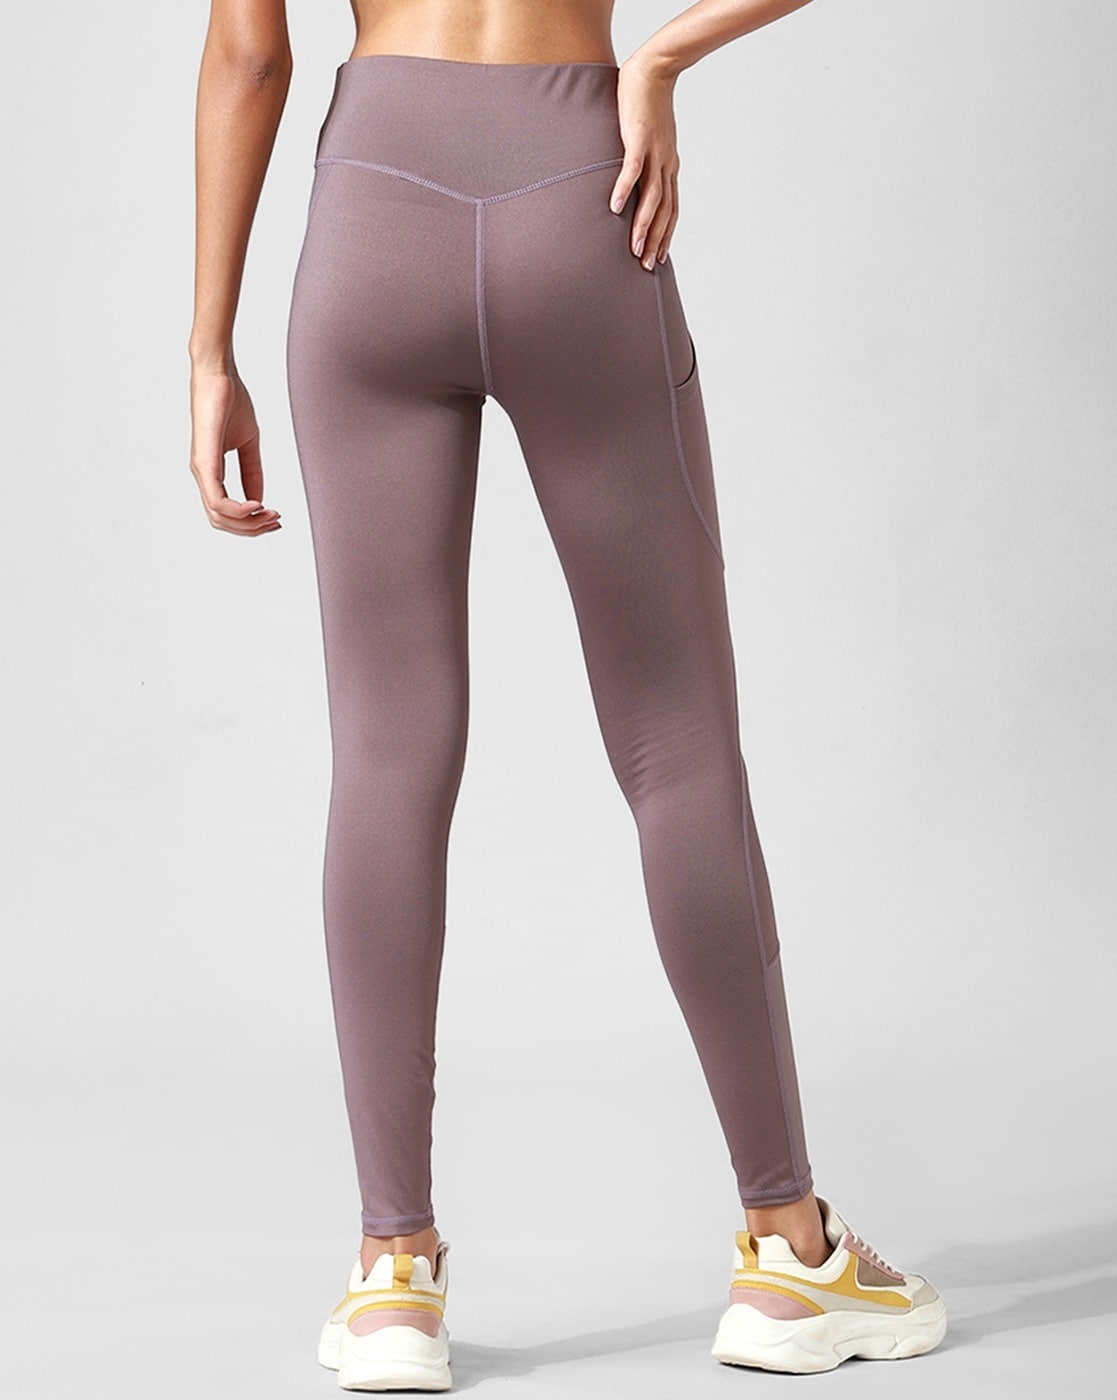 Buy Women Ankle length Skin Leggings / Yoga Pants: TT Bazaar